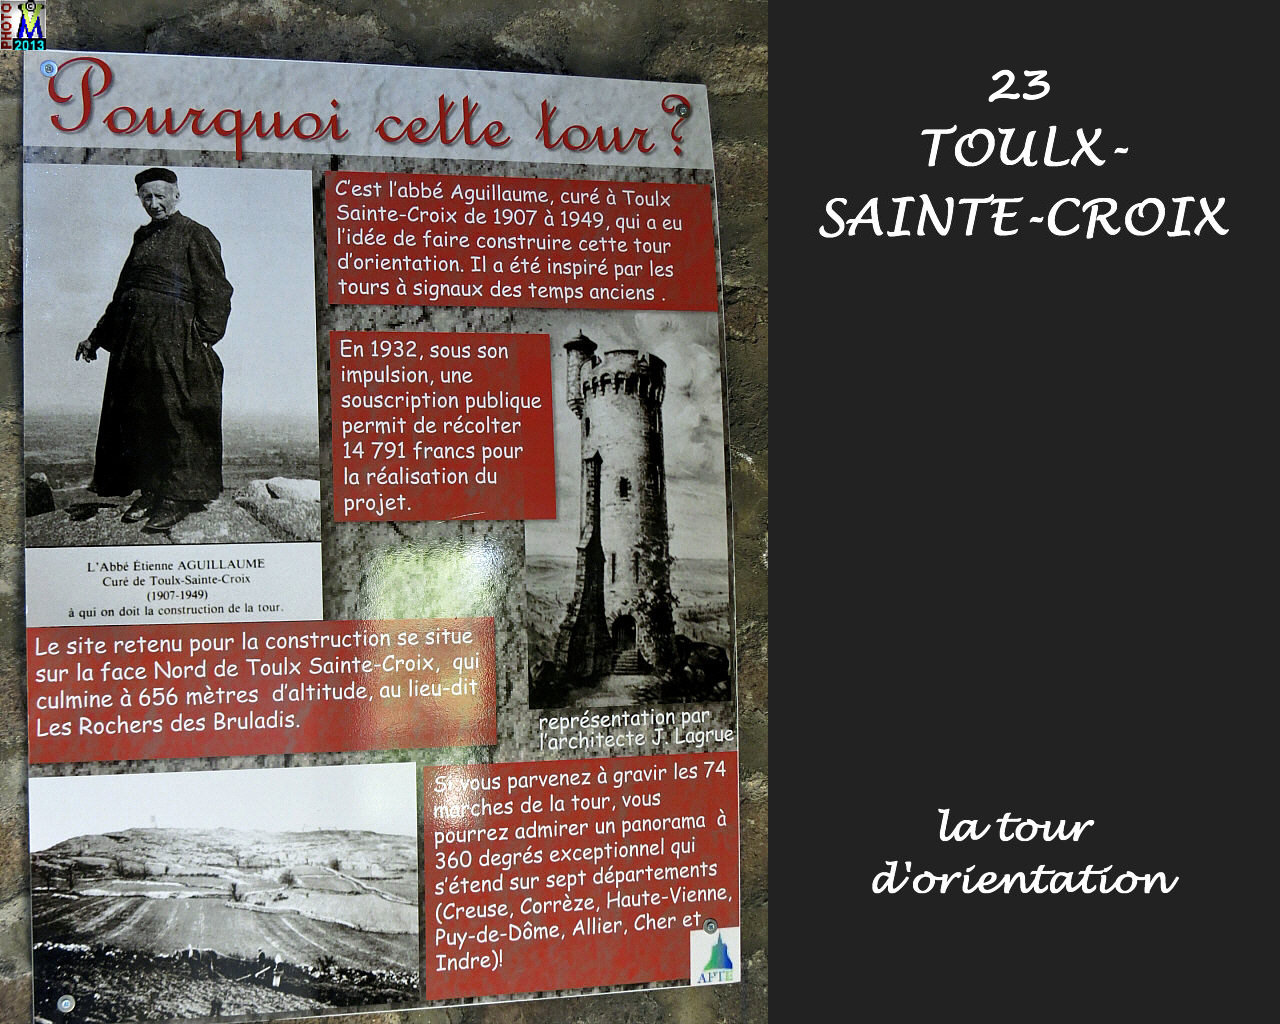 23TOULX-SAINTE-CROIX_tour_108.jpg